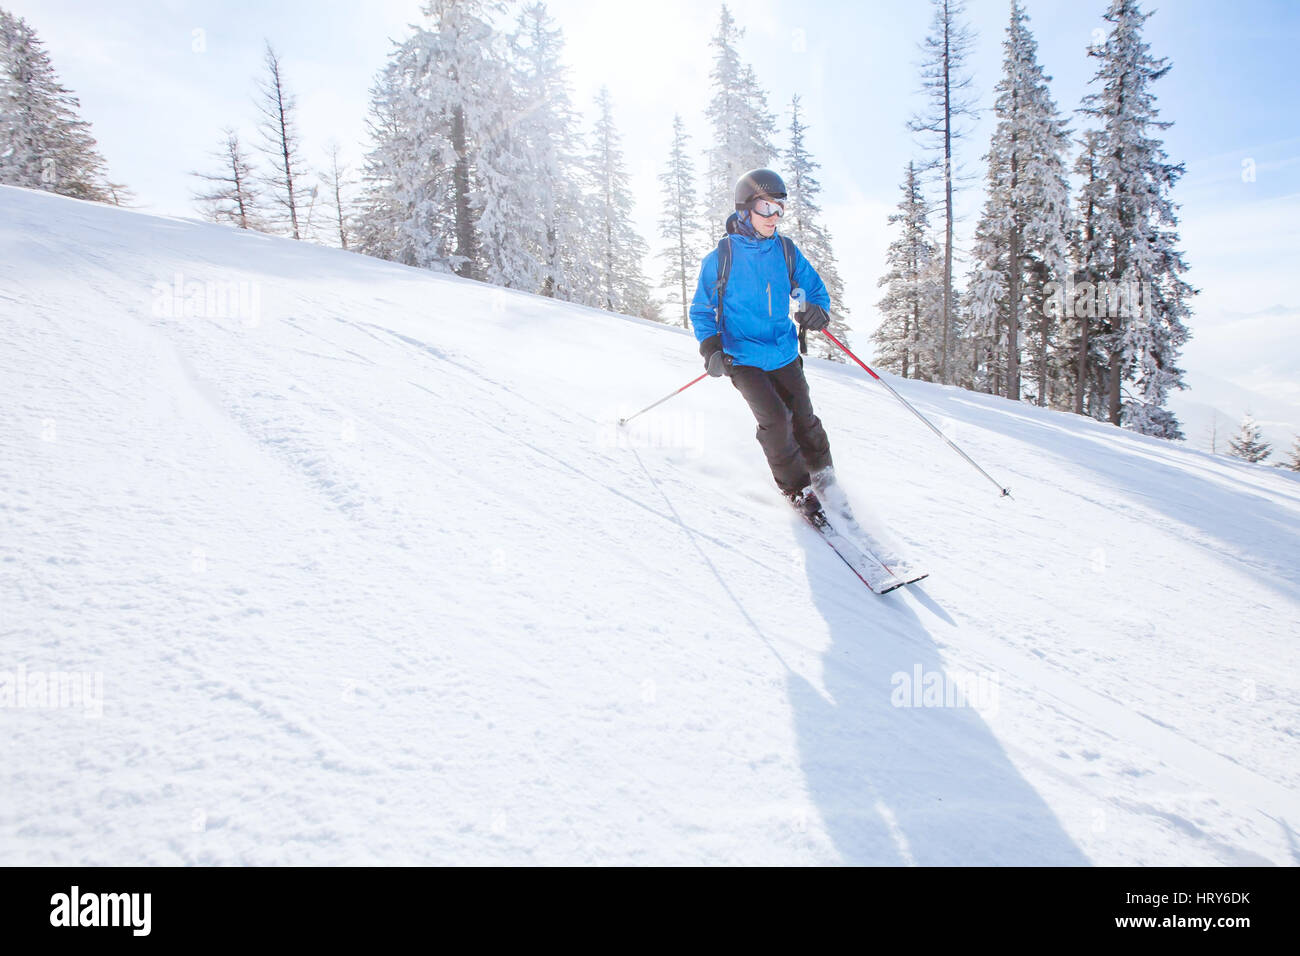 Le ski alpin, le ski de fond en montagne, sport d'hiver Banque D'Images